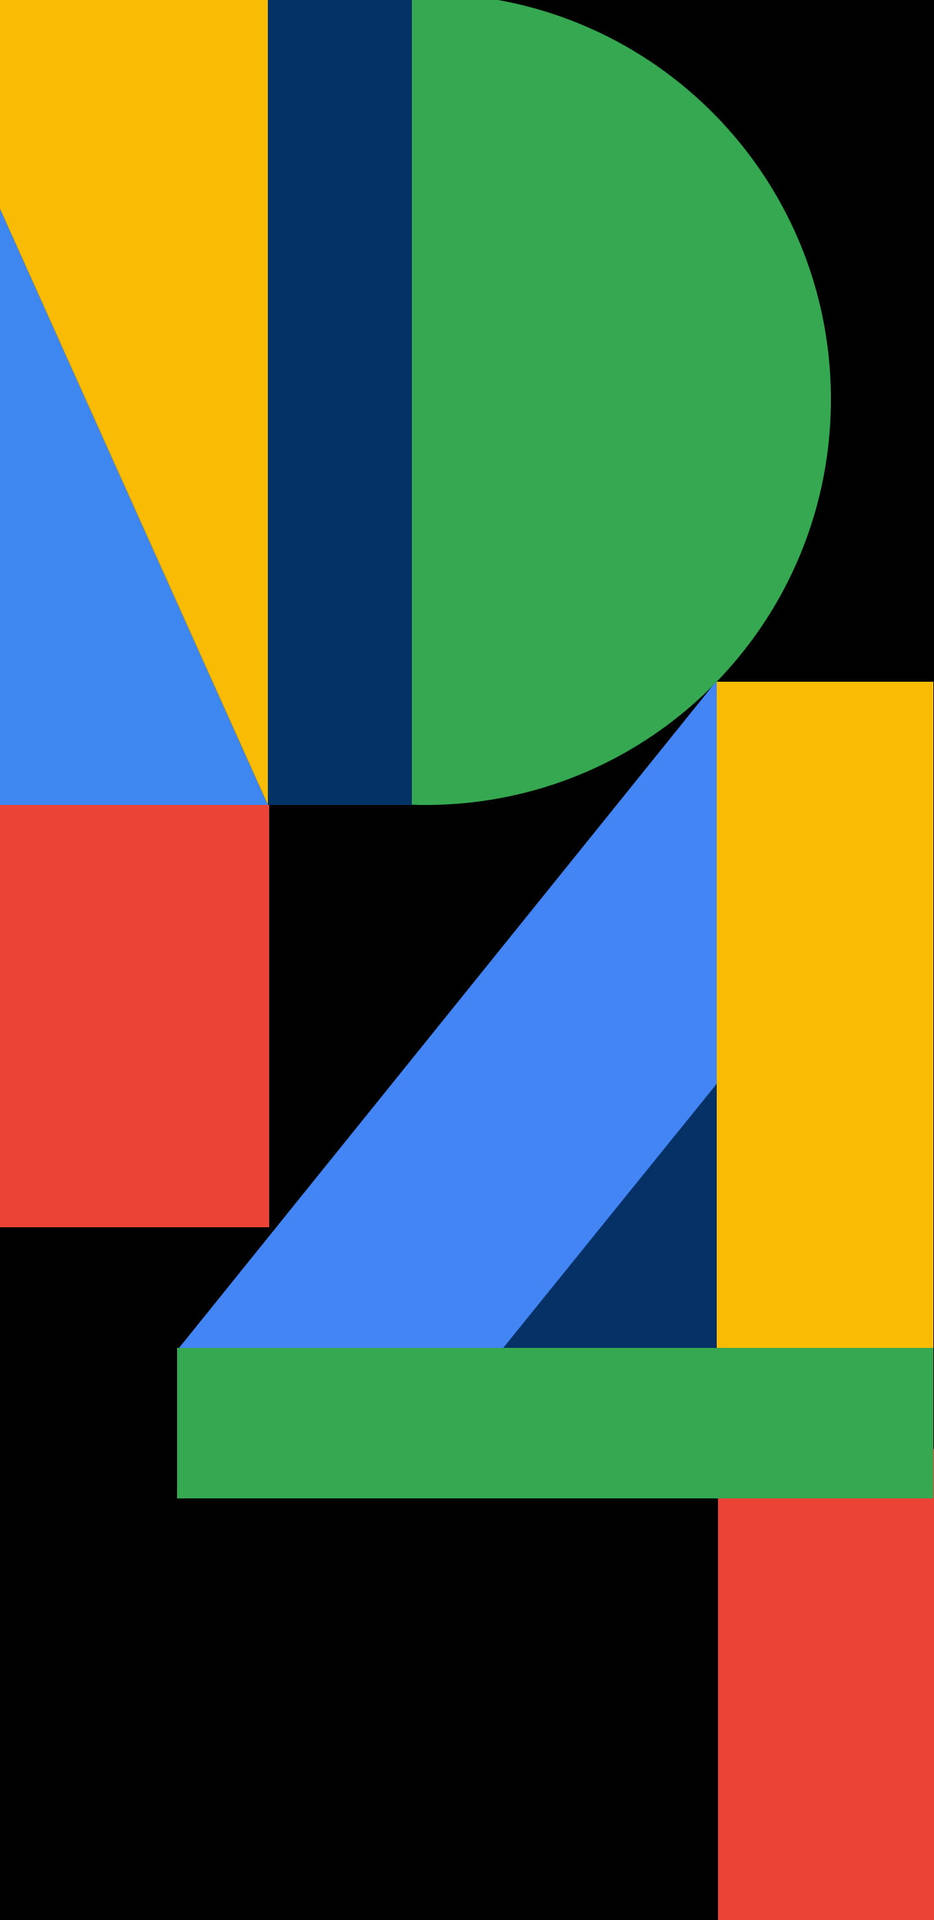 Plano De Fundo Do Google Pixel 4